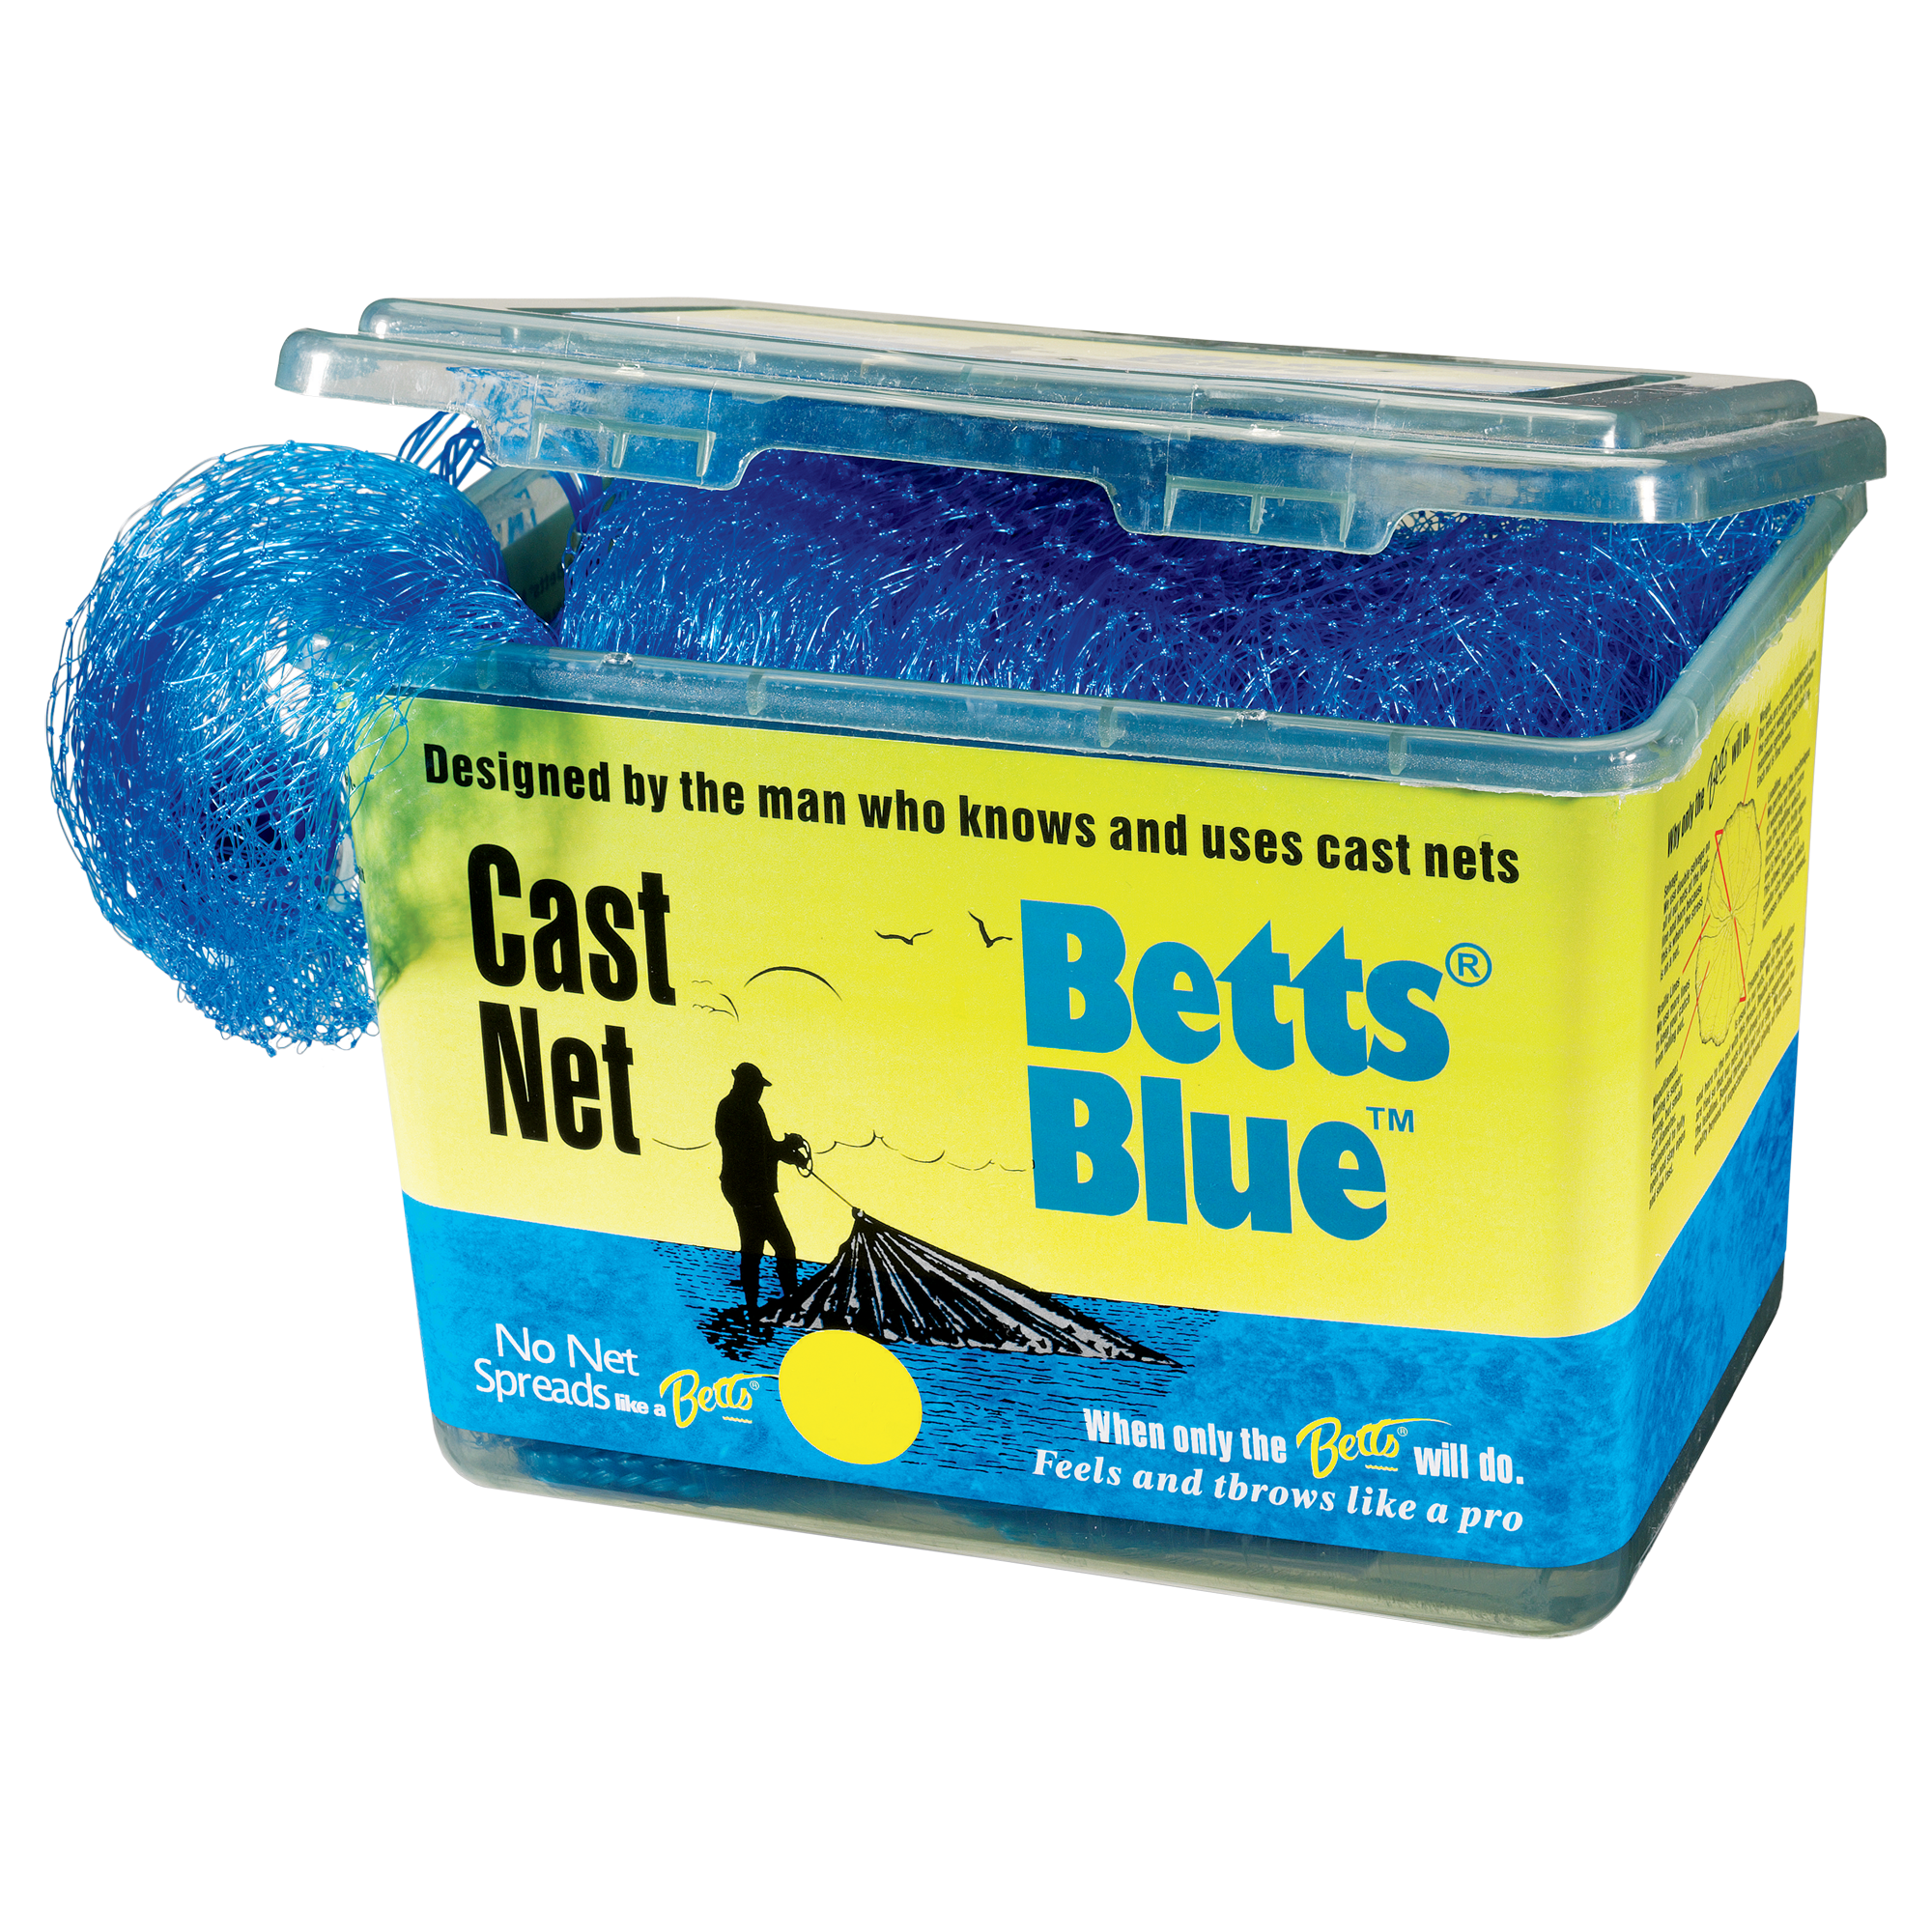 Betts Blue Cast Nets